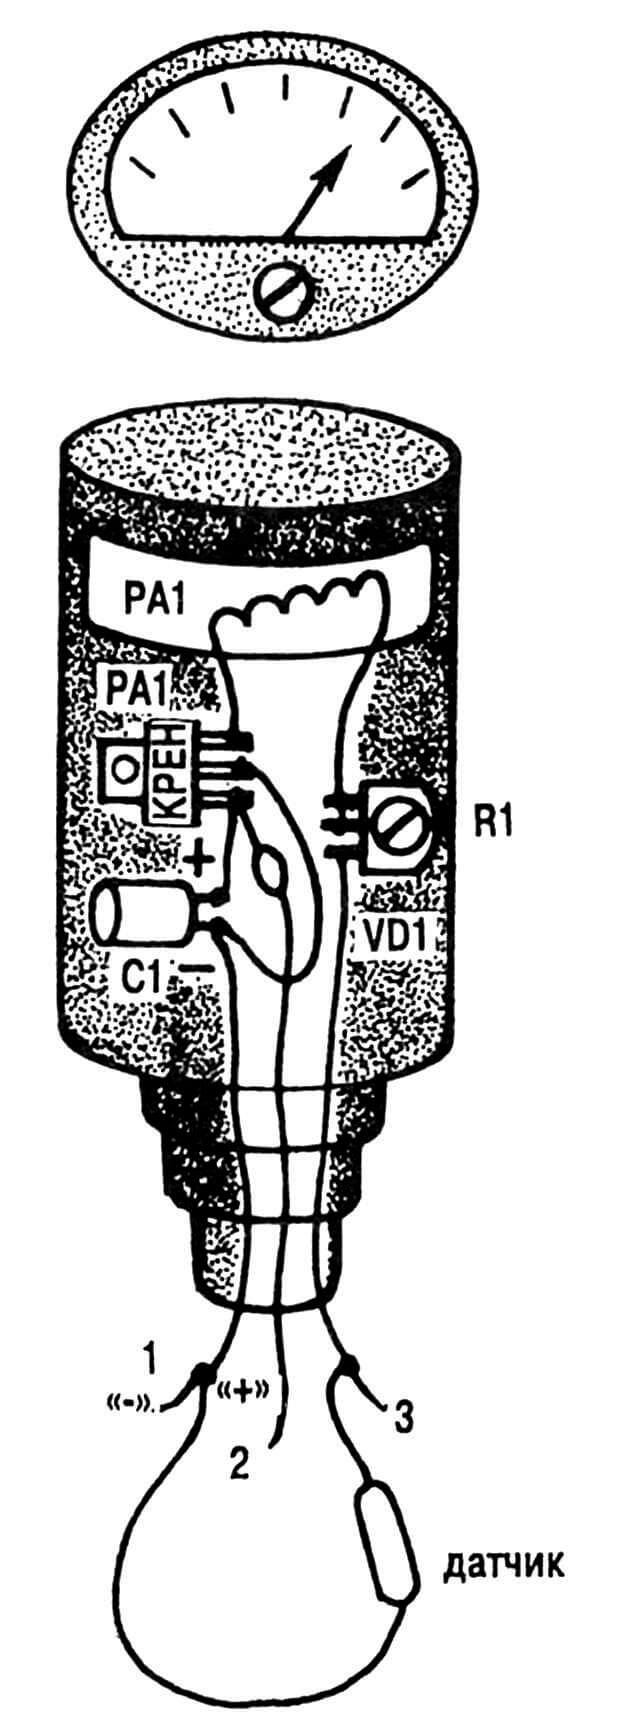 Рис. 2. Конструкция прибора, «электроника» которого почти вся умещается в корпусе микроамперметра.